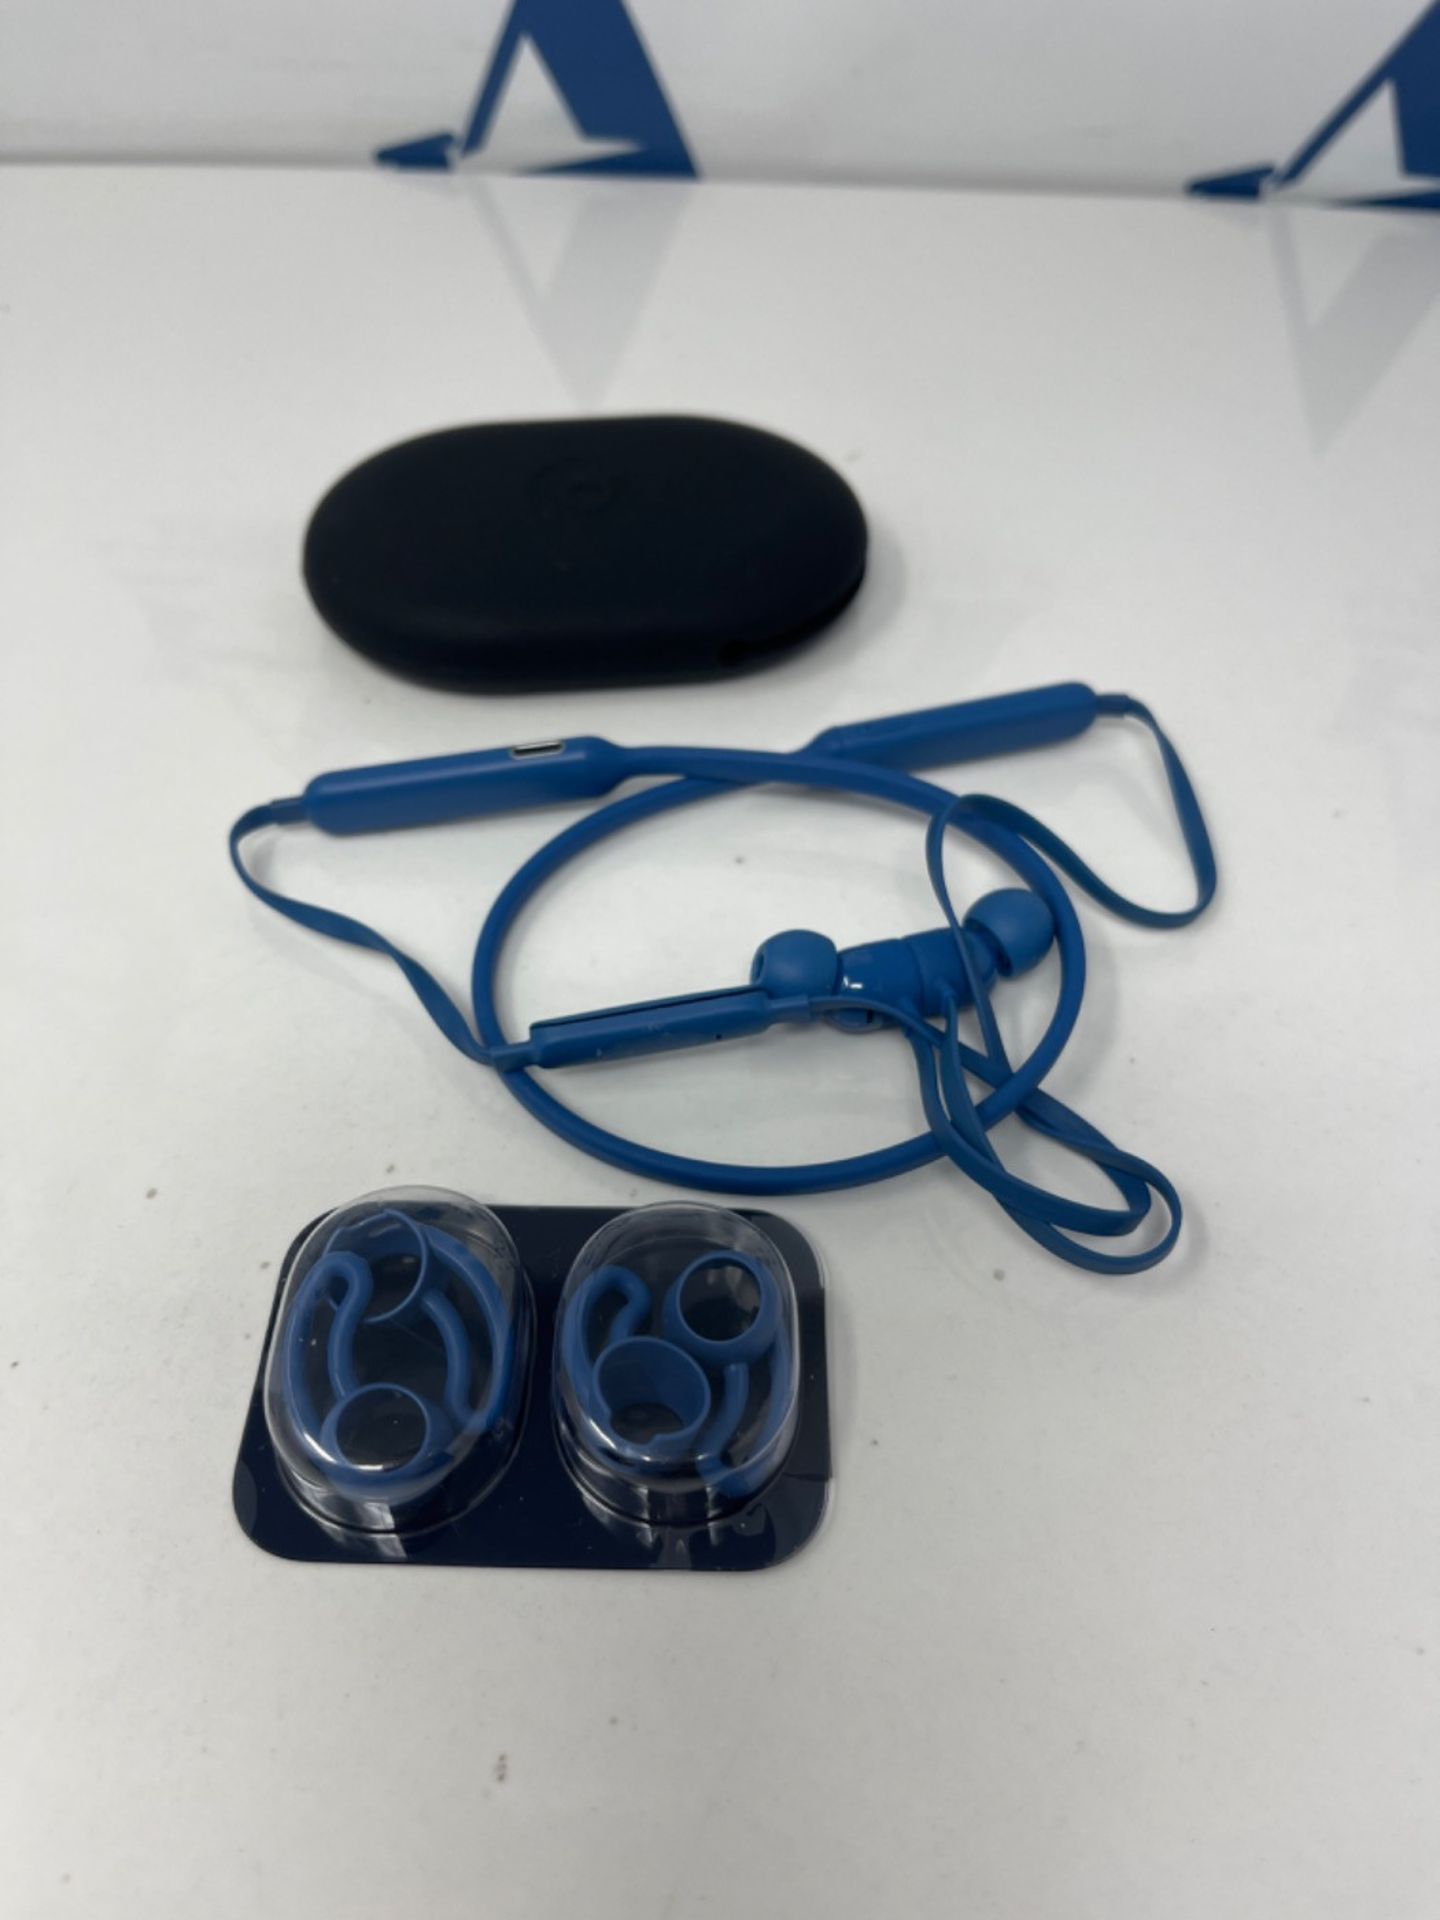 RRP £146.00 BeatsX Wireless In-Ear Headphones (2016 Model) - Blue - Image 2 of 3